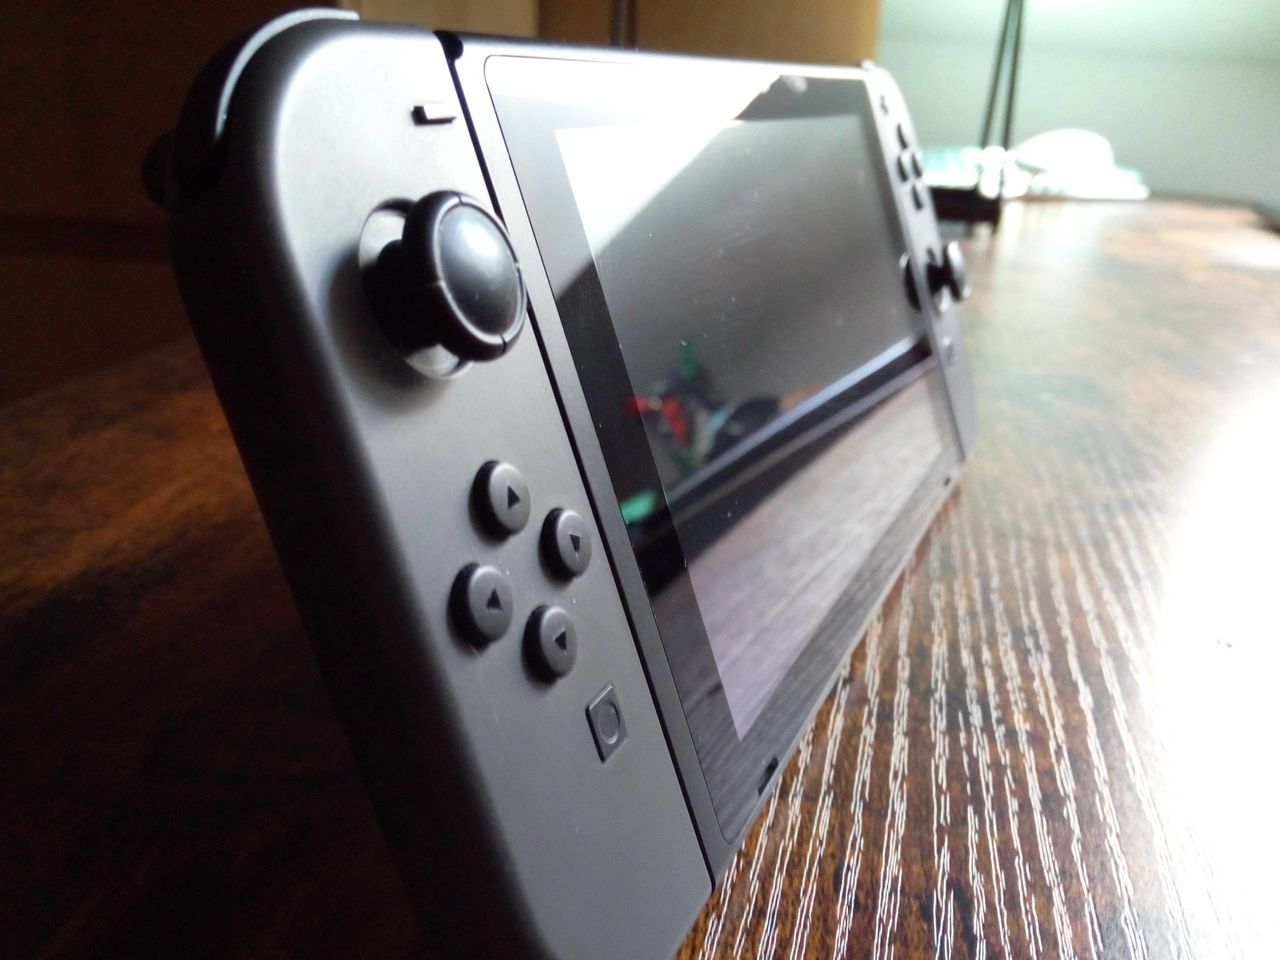 Nintendo Switch lepsze od PlayStation 4. Znamy wyniki sprzedaży